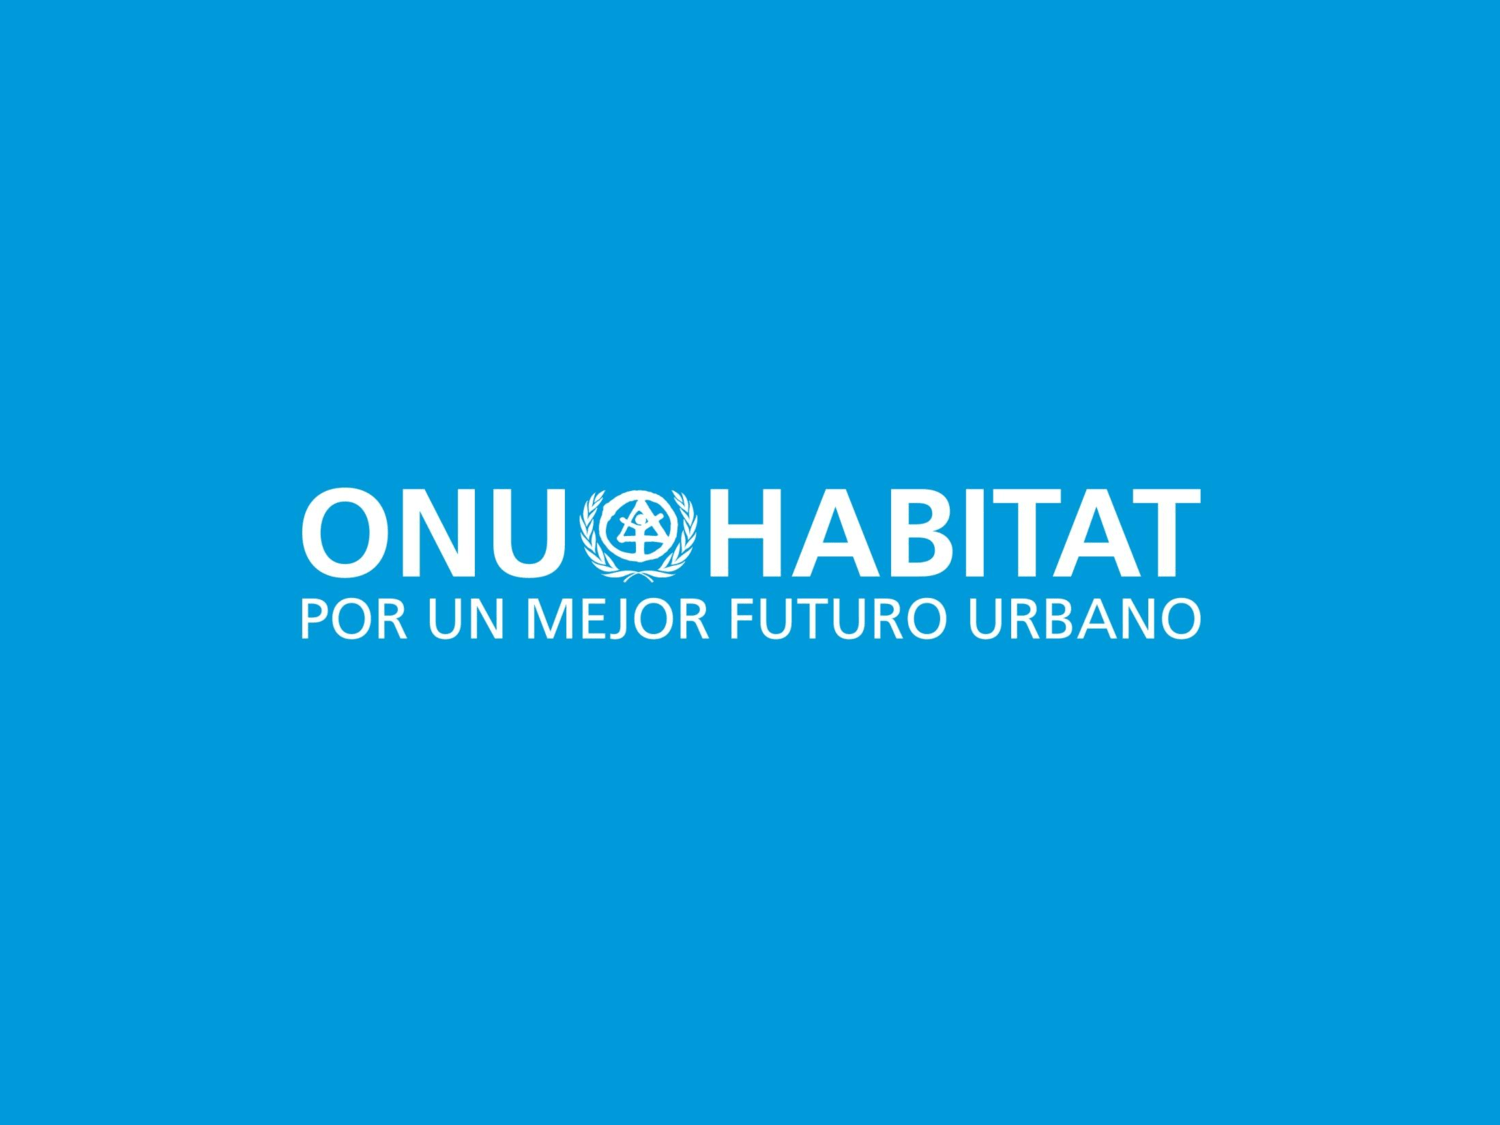 ONU-Hábitat apoyará al Cluster de vivienda en Guanajuato - onu habitat